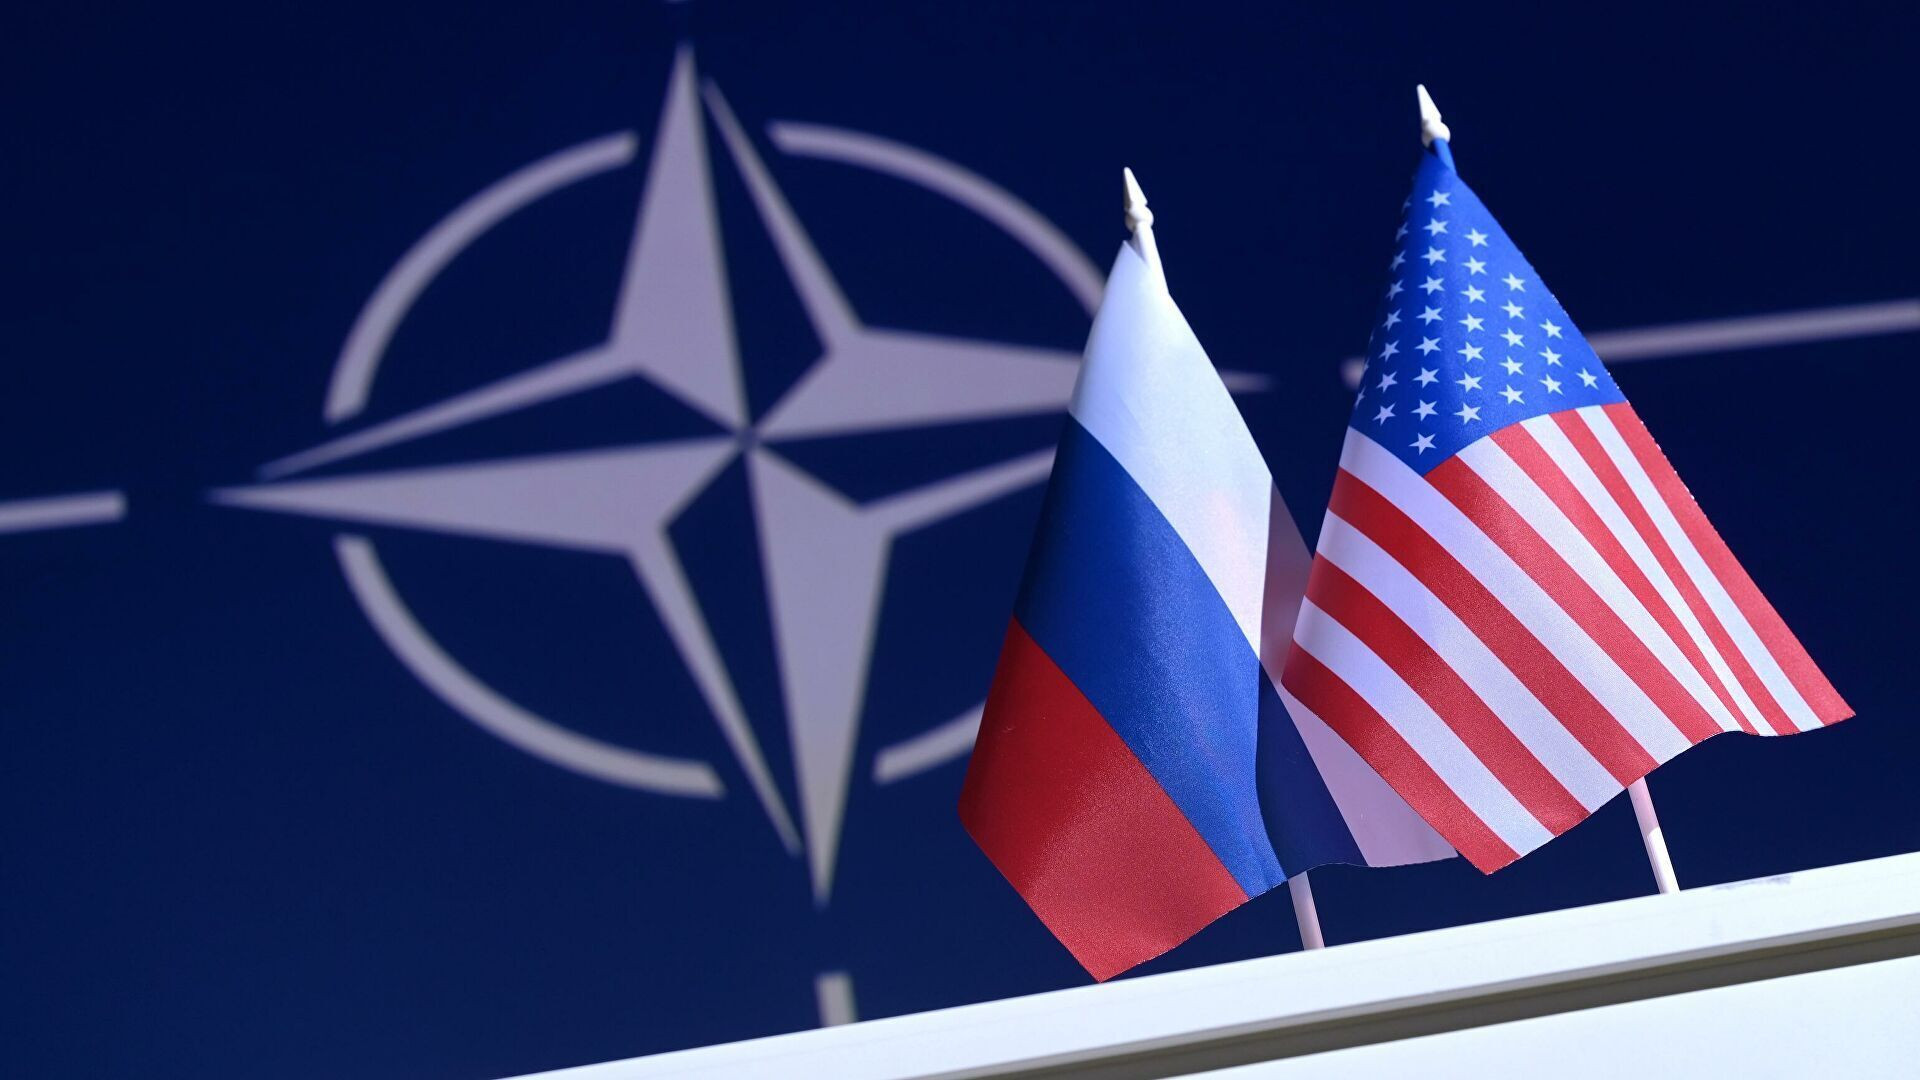 Trước hội đàm Nga - NATO, Moskva yêu cầu Washington thôi luận điệu gây hấn  - 1